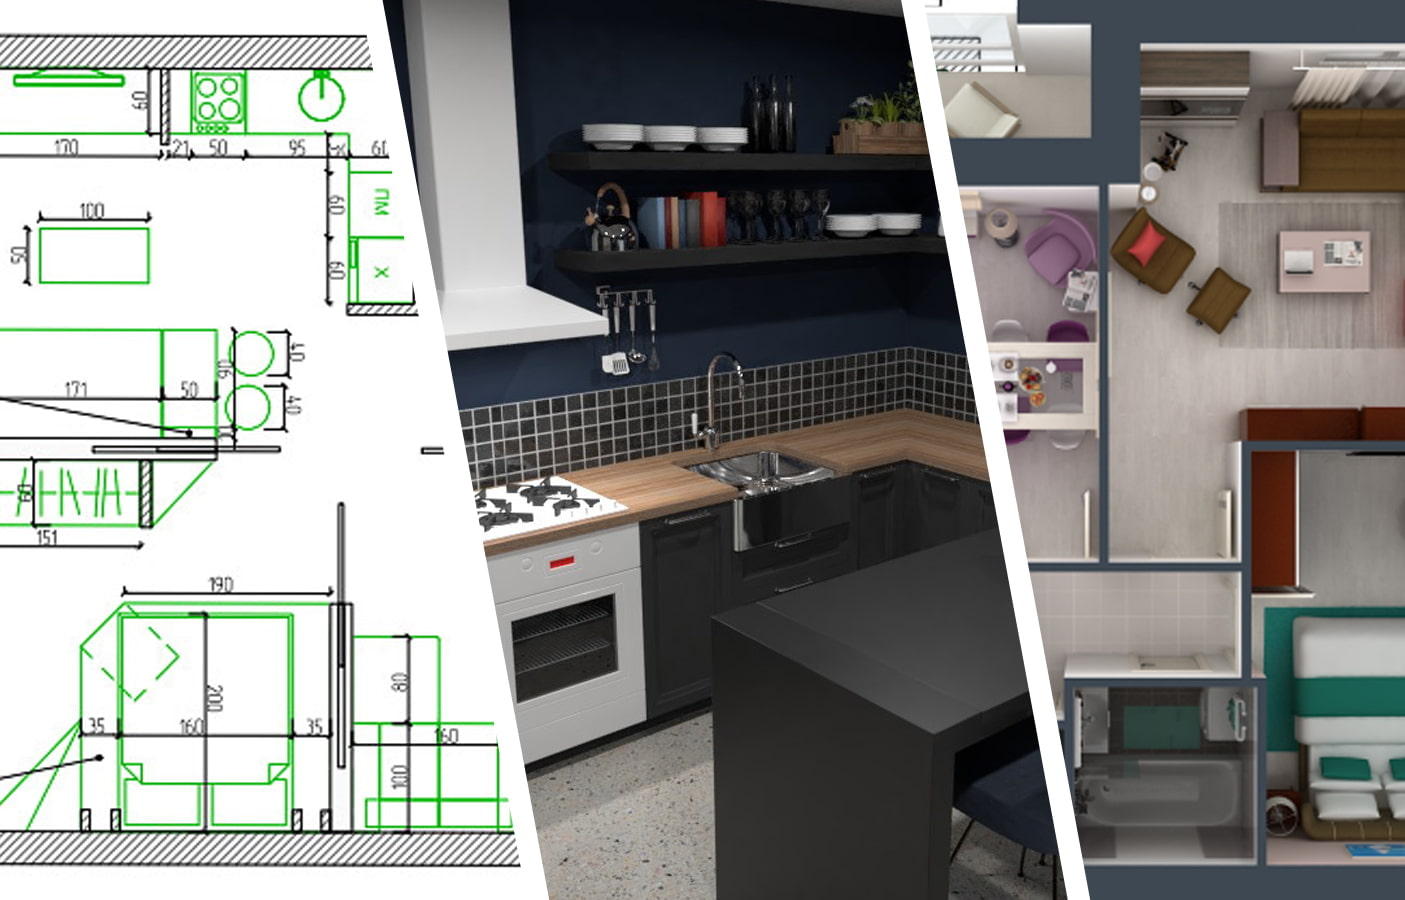 ﻿﻿ТОП-7 бесплатных программ для дизайна интерьера, которые помогут создать квартиру своей мечты